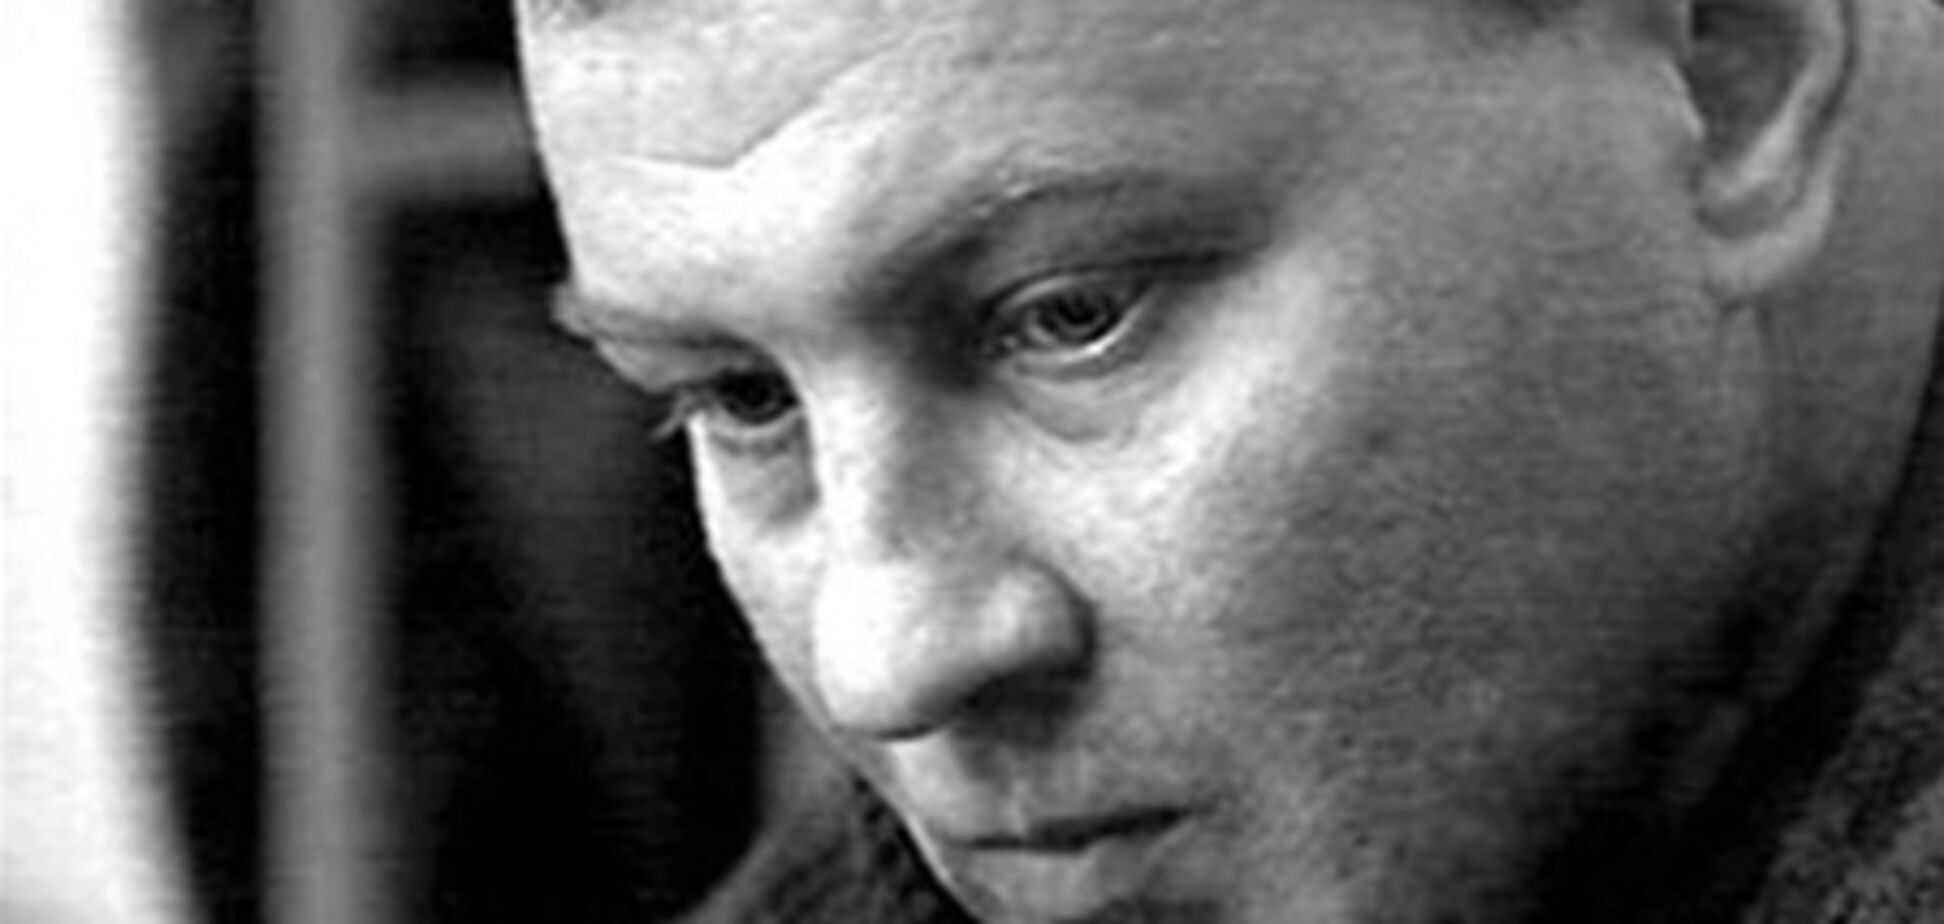 Присяжные признали вину убийцы 'чеченского палача'